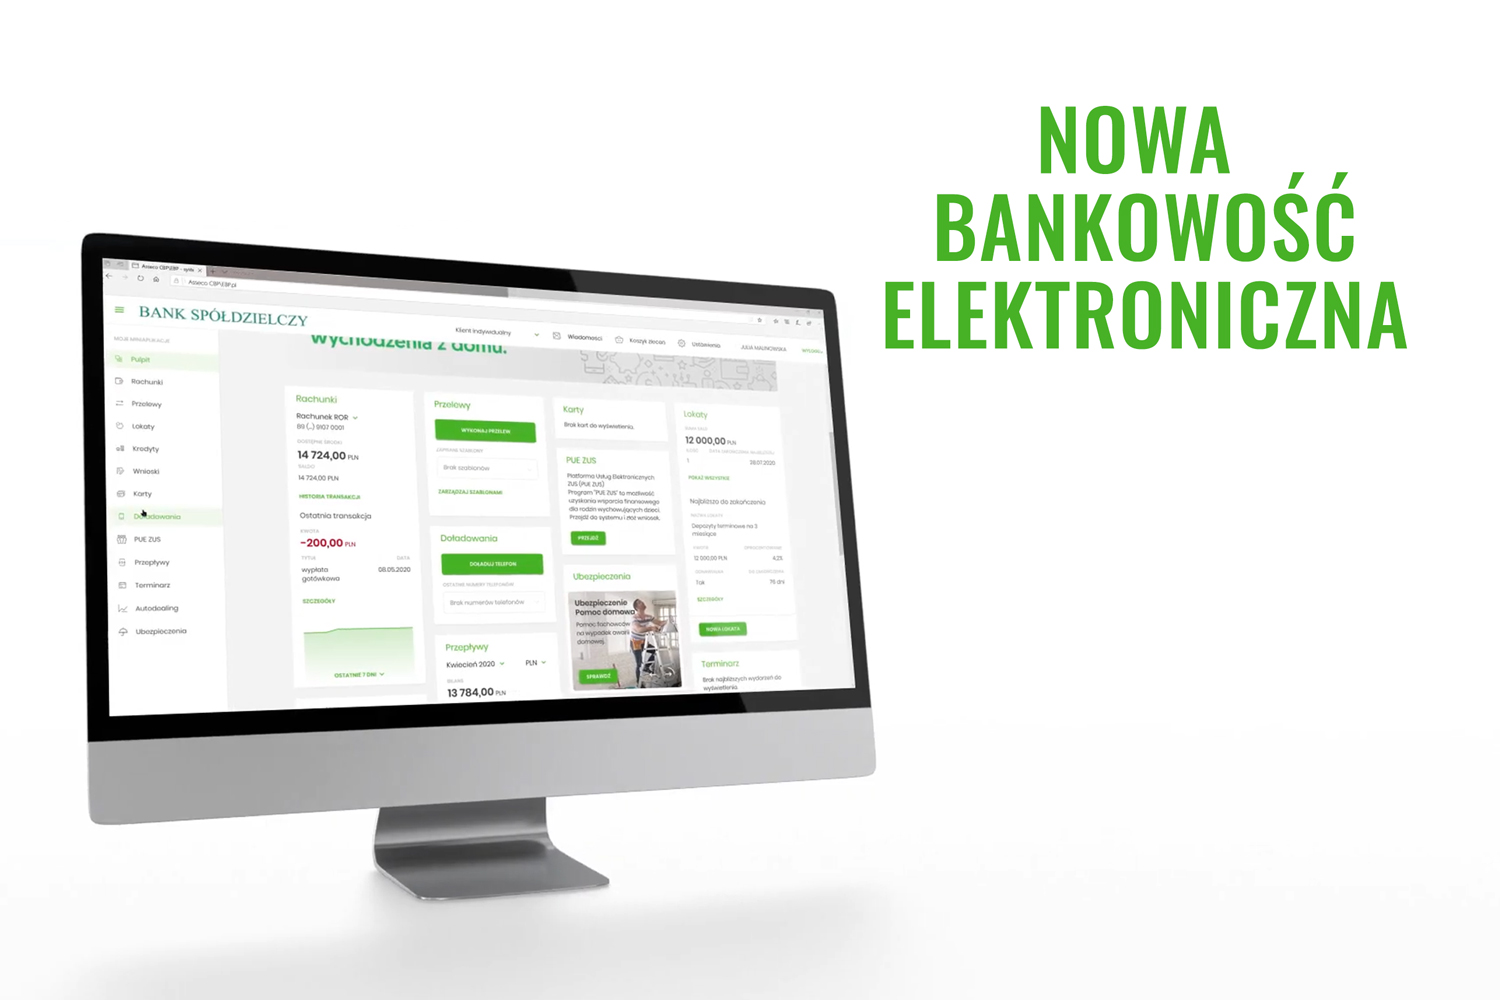 Nowa Bankowość Elektroniczna